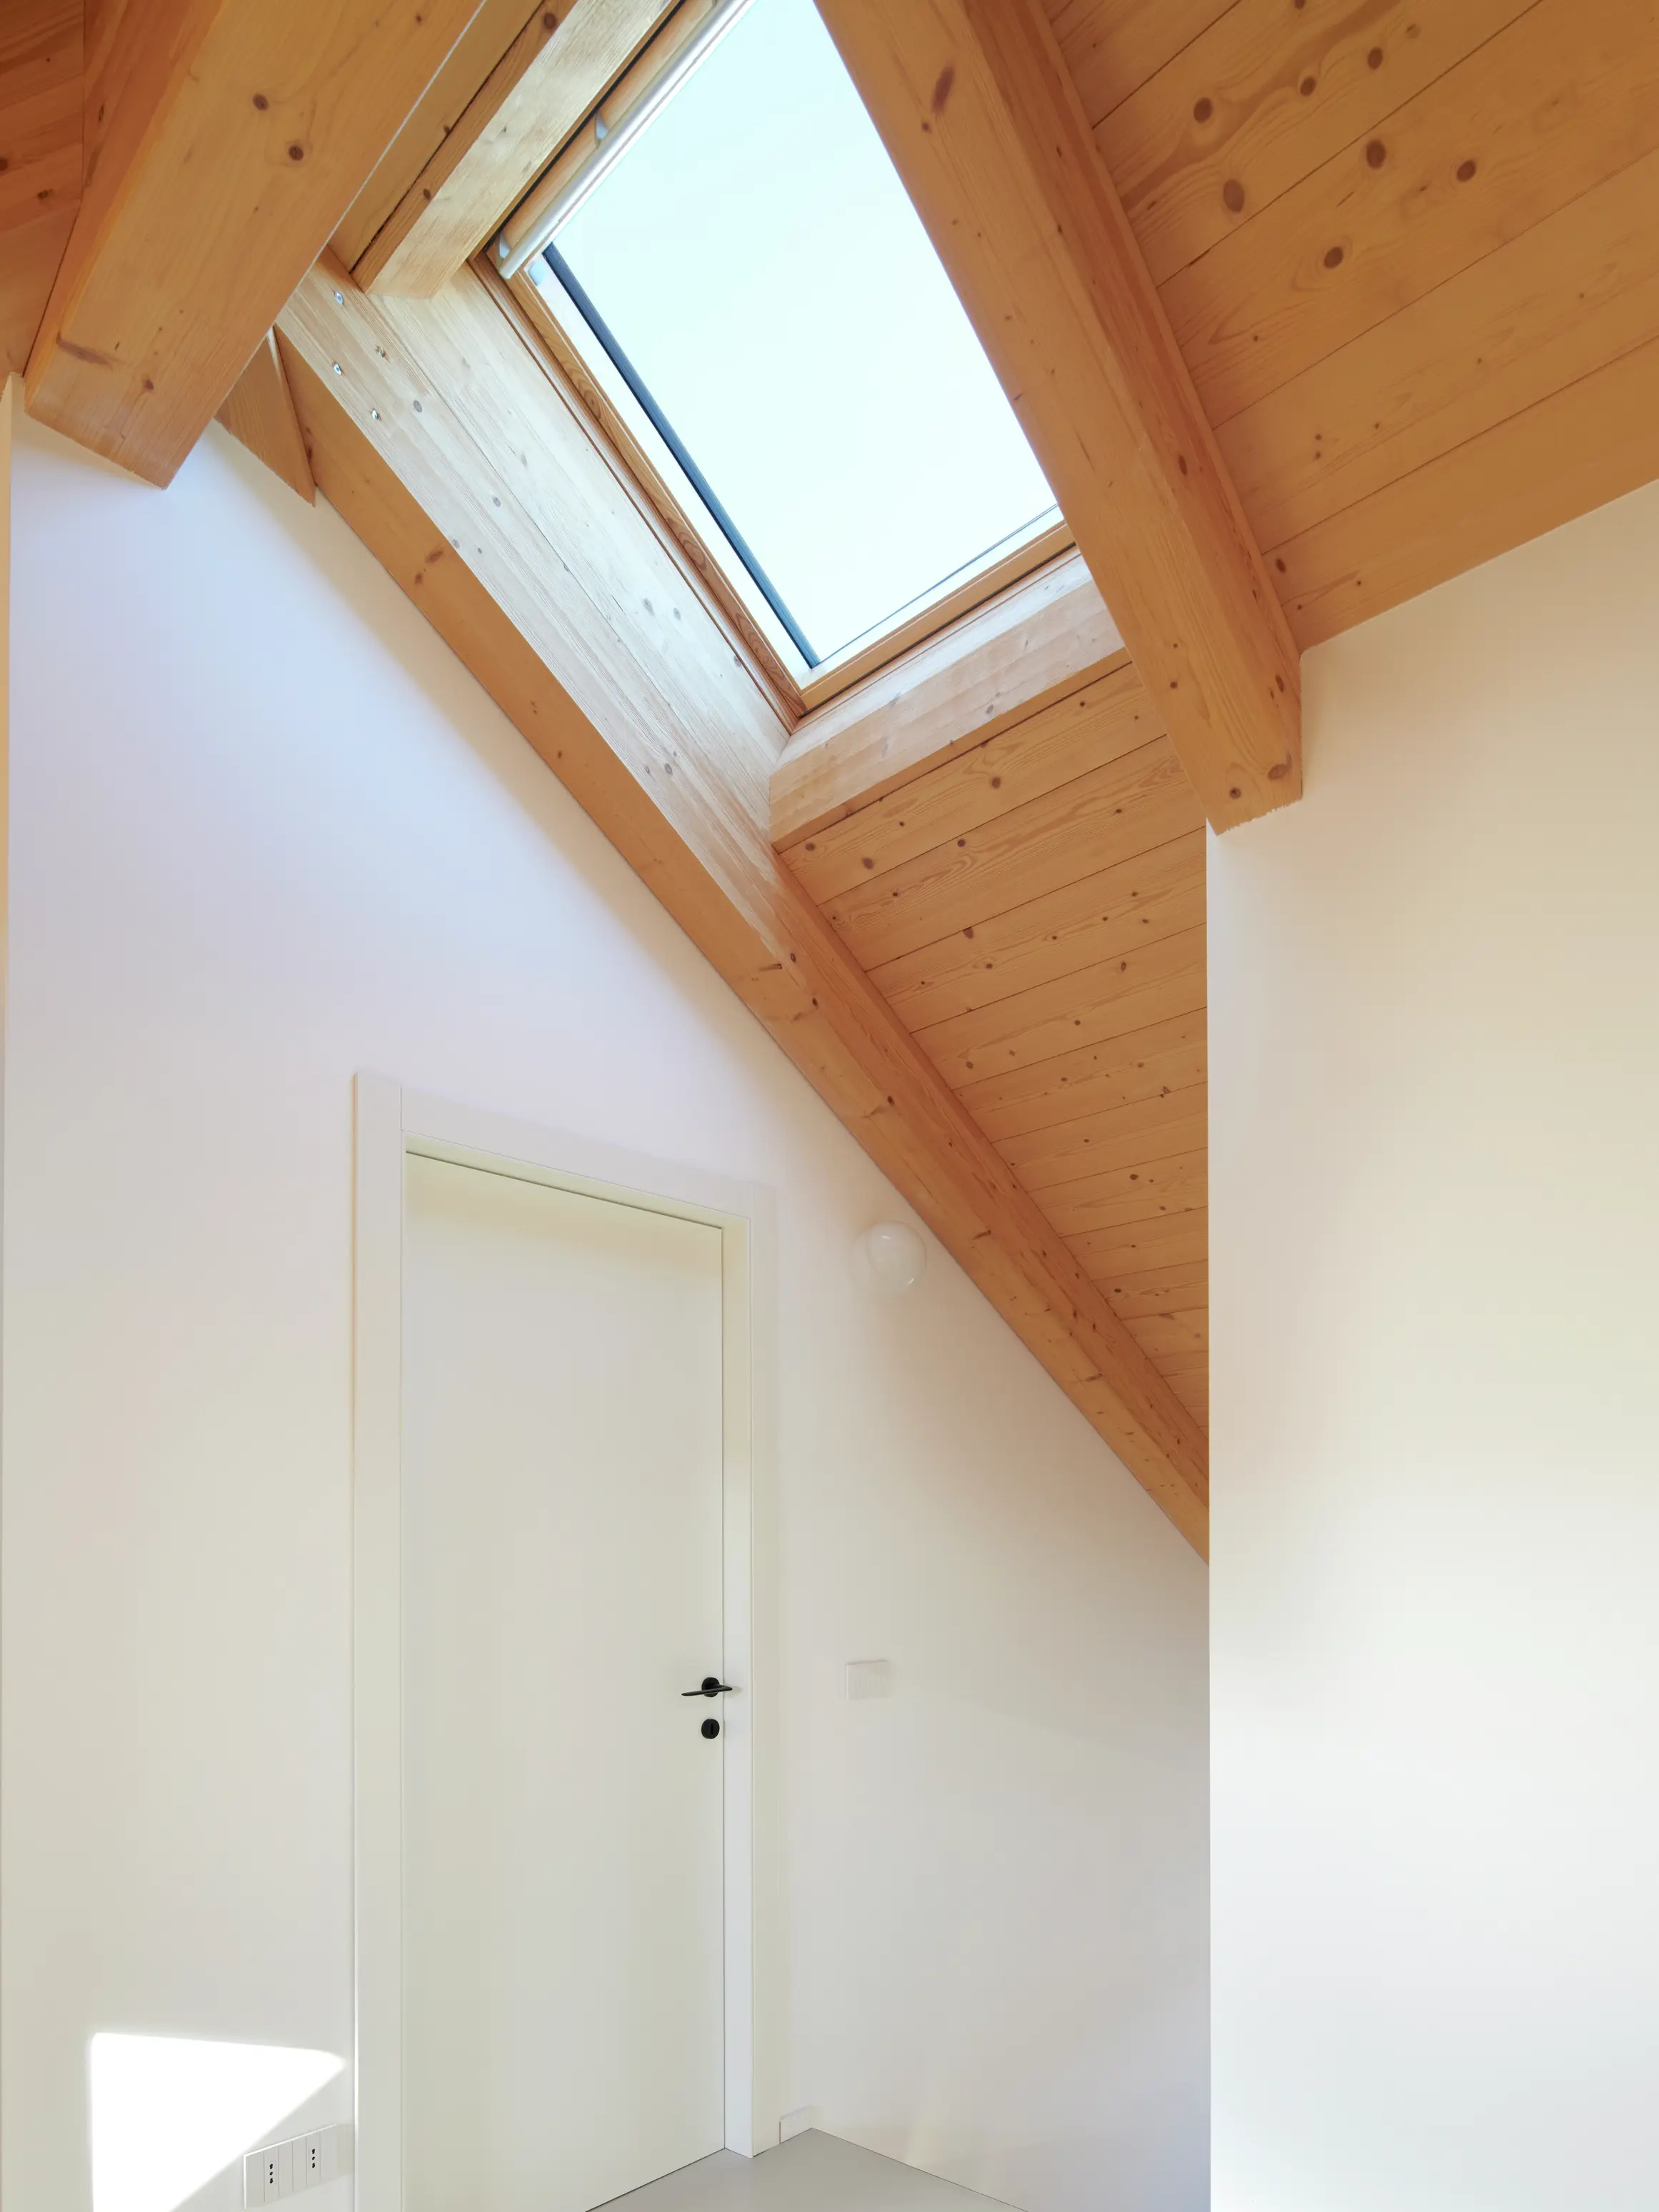 Comble moderne avec fenêtre de toit VELUX et poutres en bois, baigné de lumière solaire.